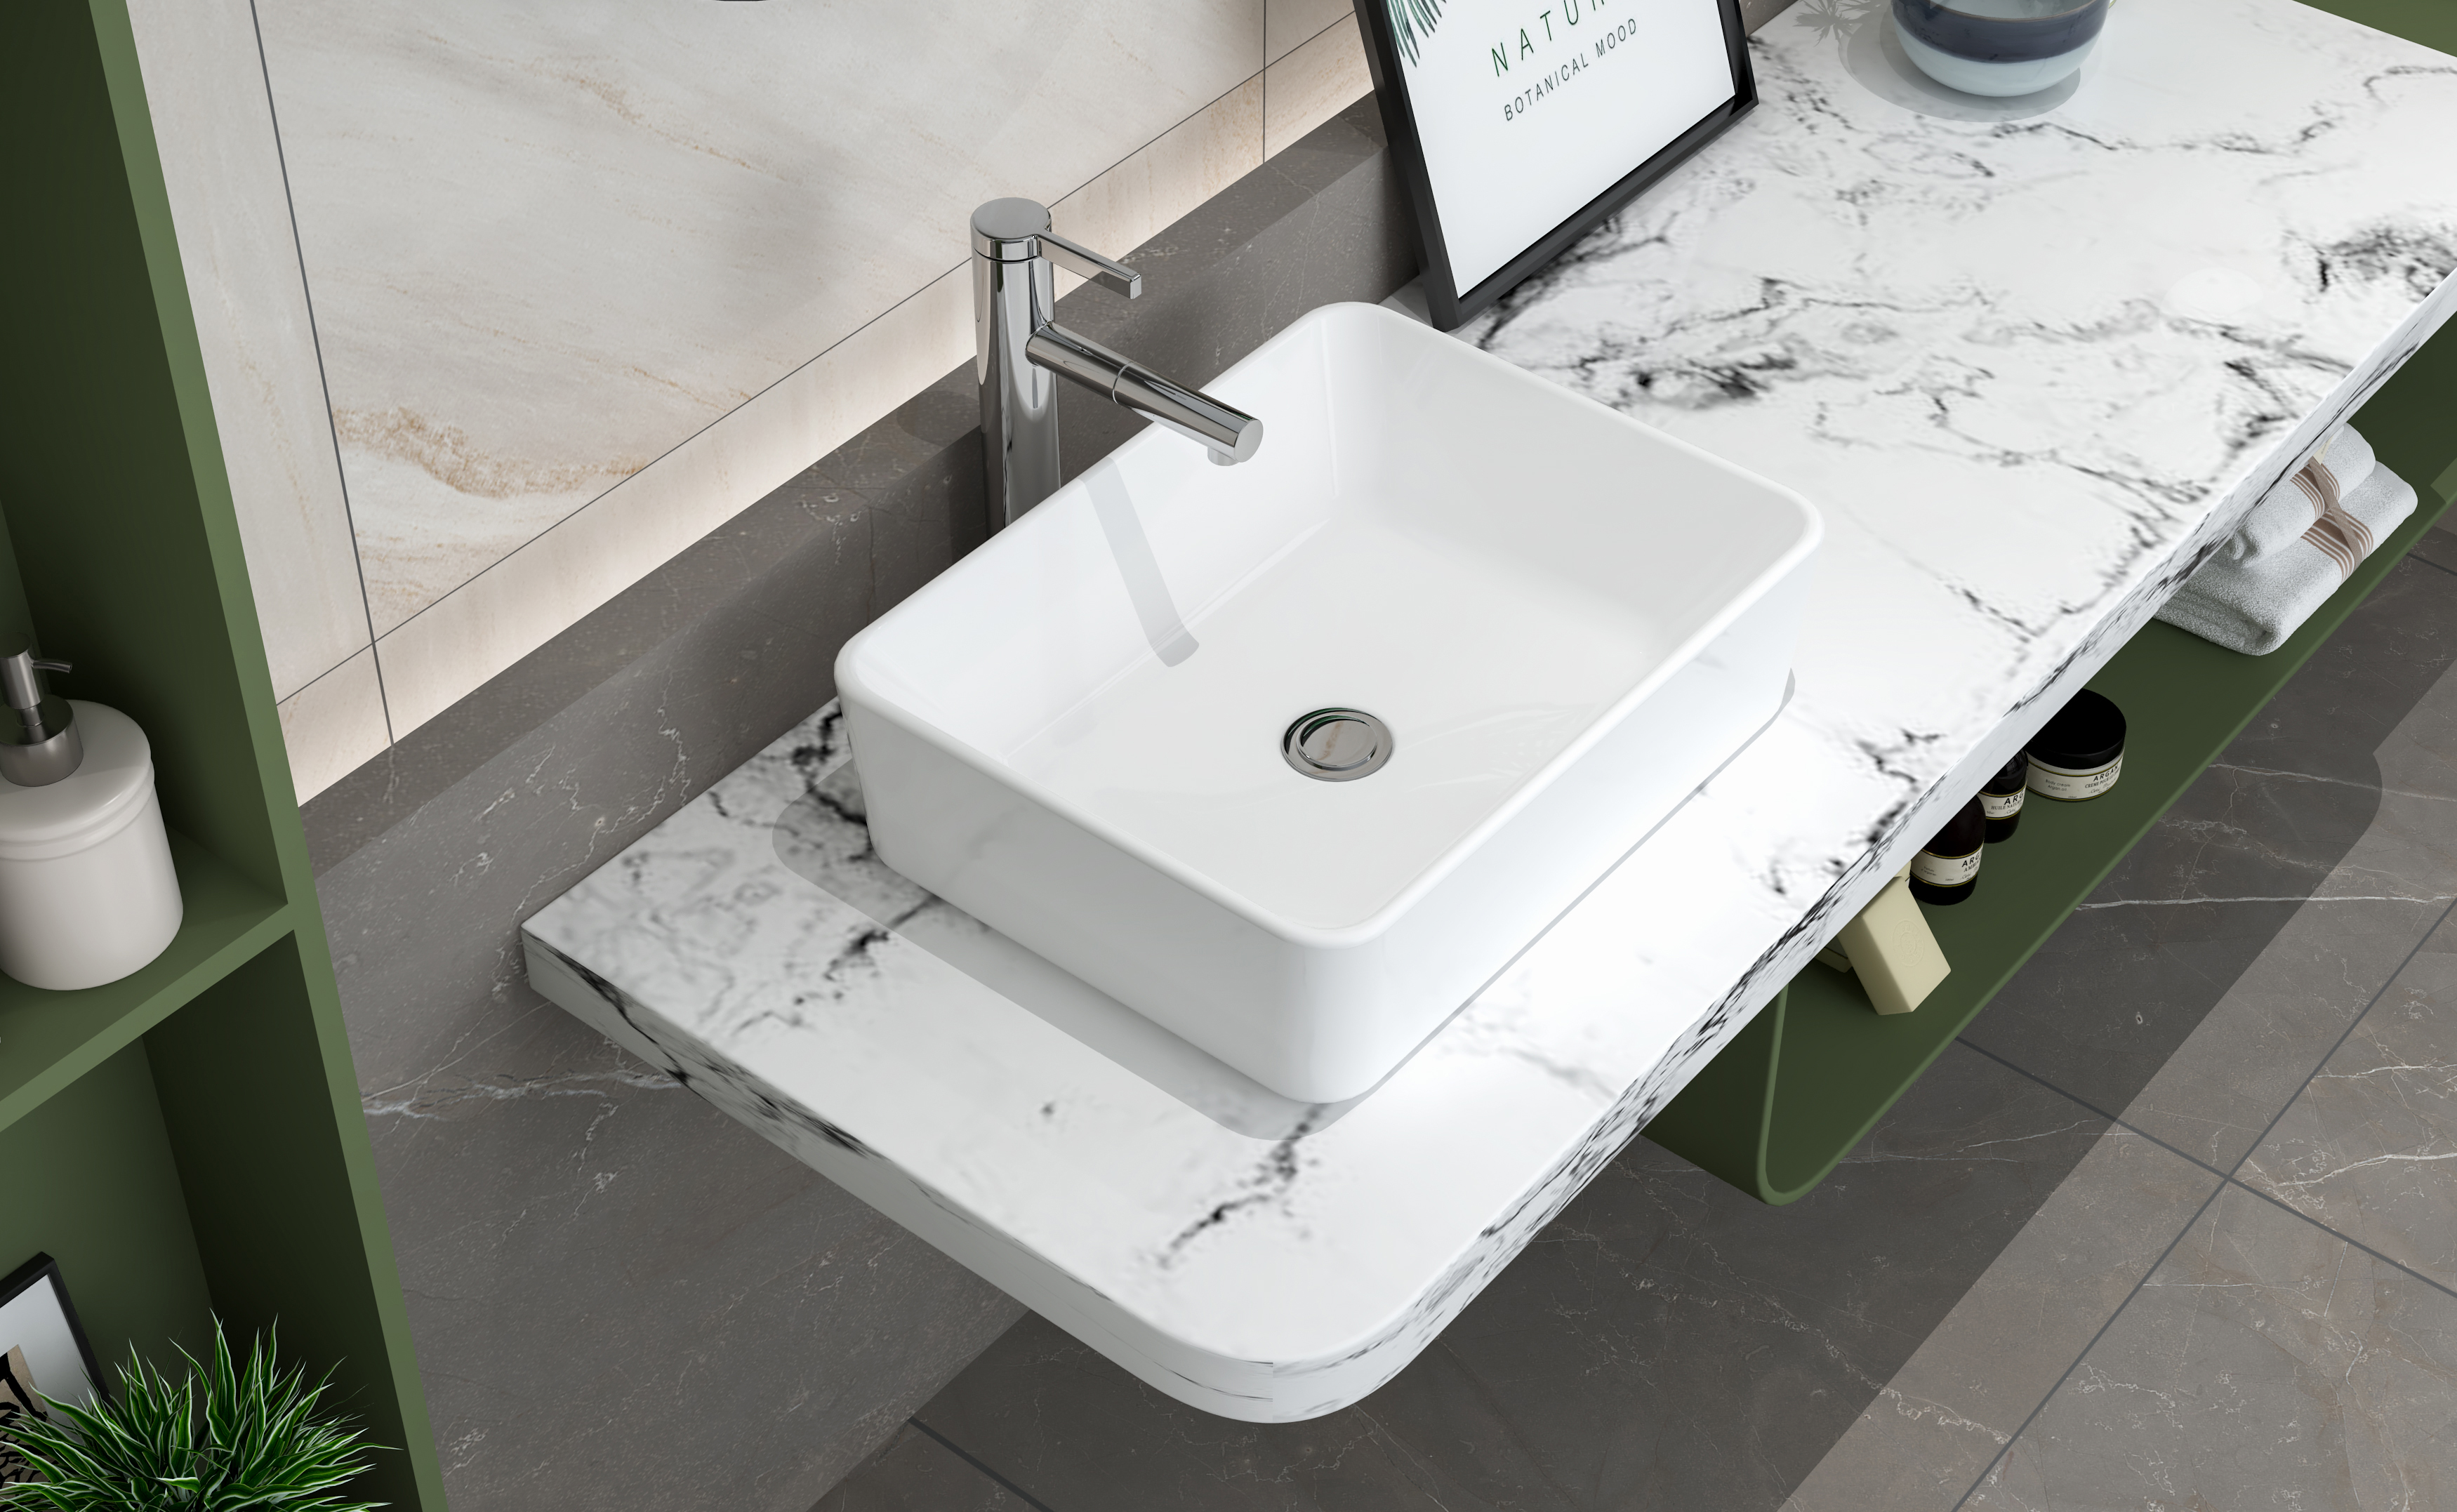 MEJE 19×15-Zoll-Badezimmer-Waschbecken, weißes Rechteck über der Arbeitsplatte, Kunstwaschbecken aus Porzellankeramik, Waschbecken für Toiletten-Waschtischunterschrank